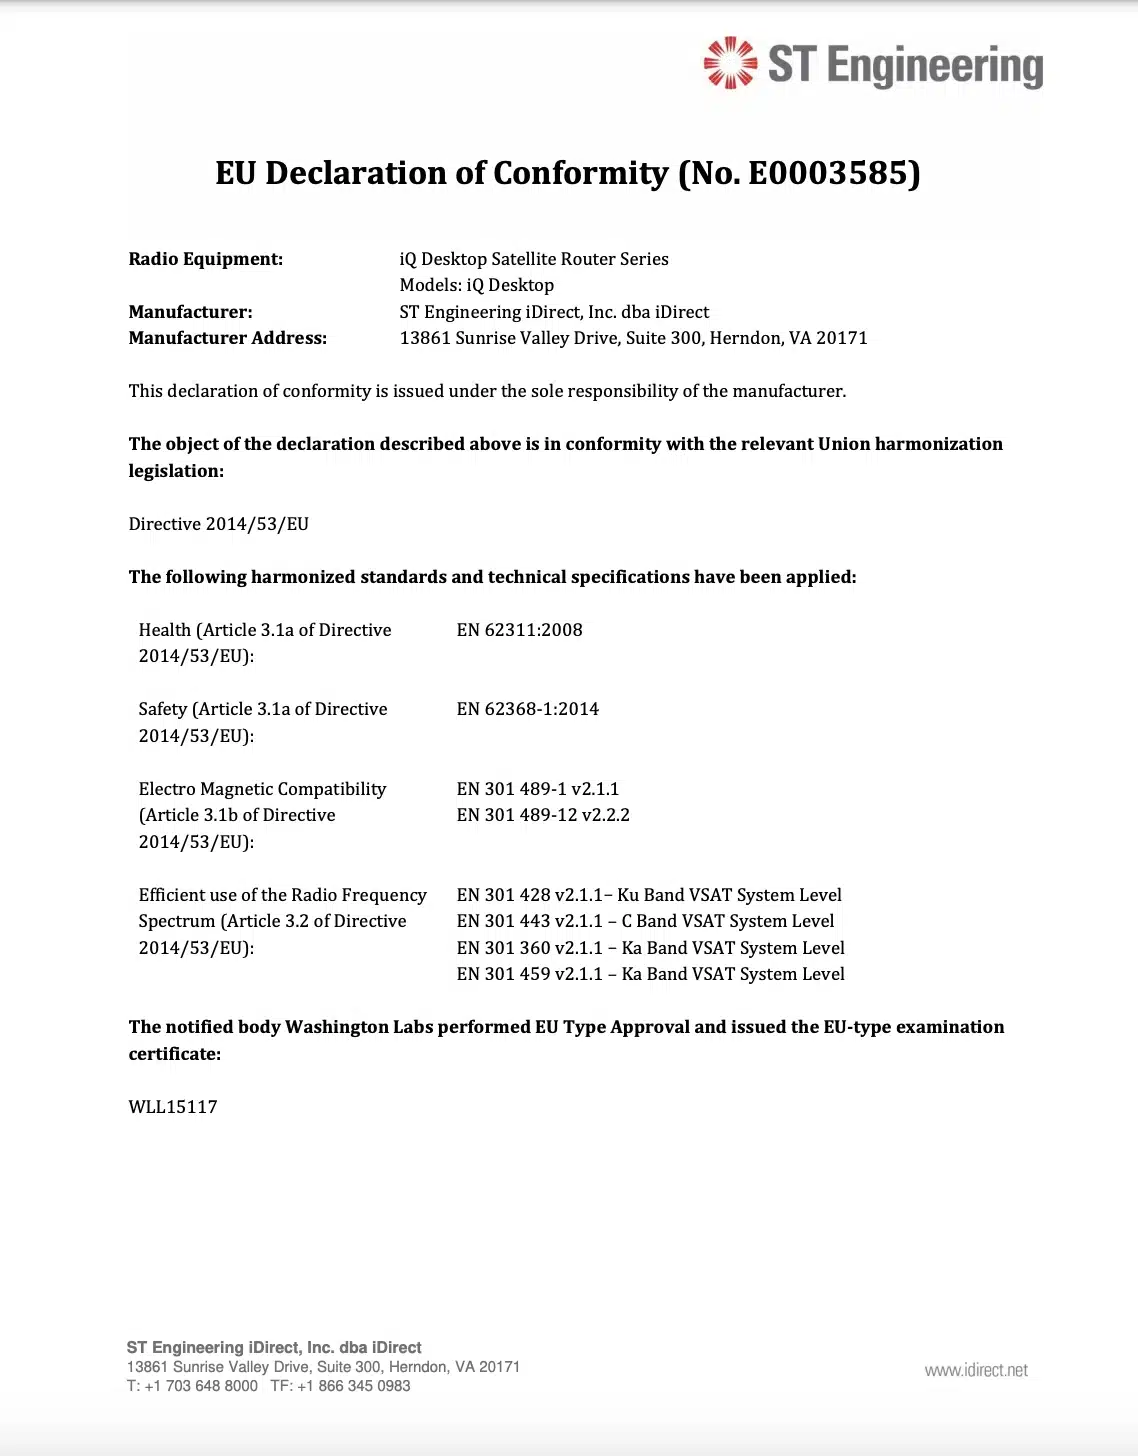 iQ Desktop+ Declaration of Conformity - EU